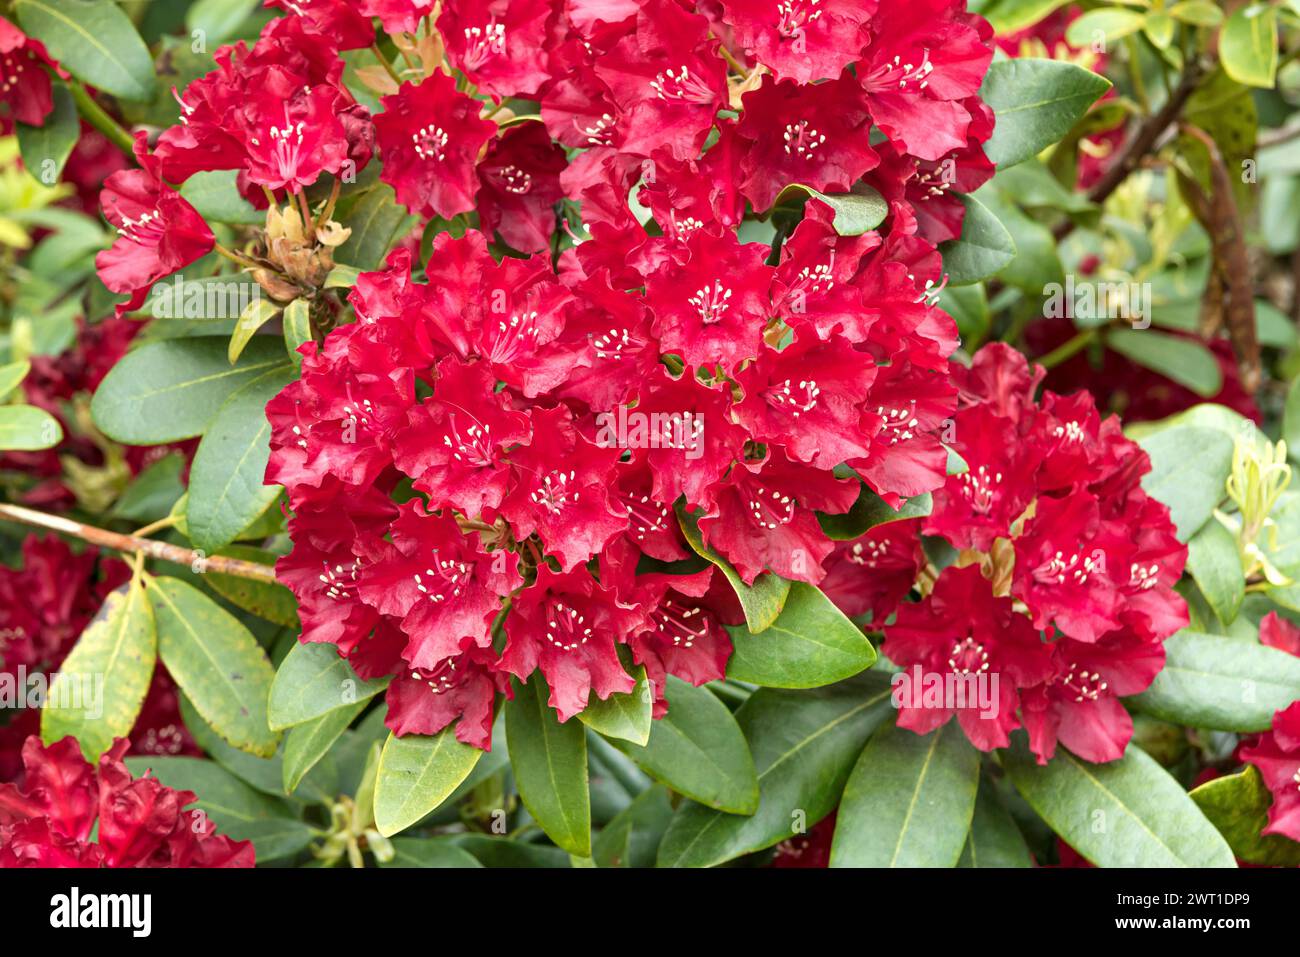 rhododendron (Rhododendron 'Sammetglut', Rhododendron Sammetglut), fioritura, cultivar Sammetglut Foto Stock